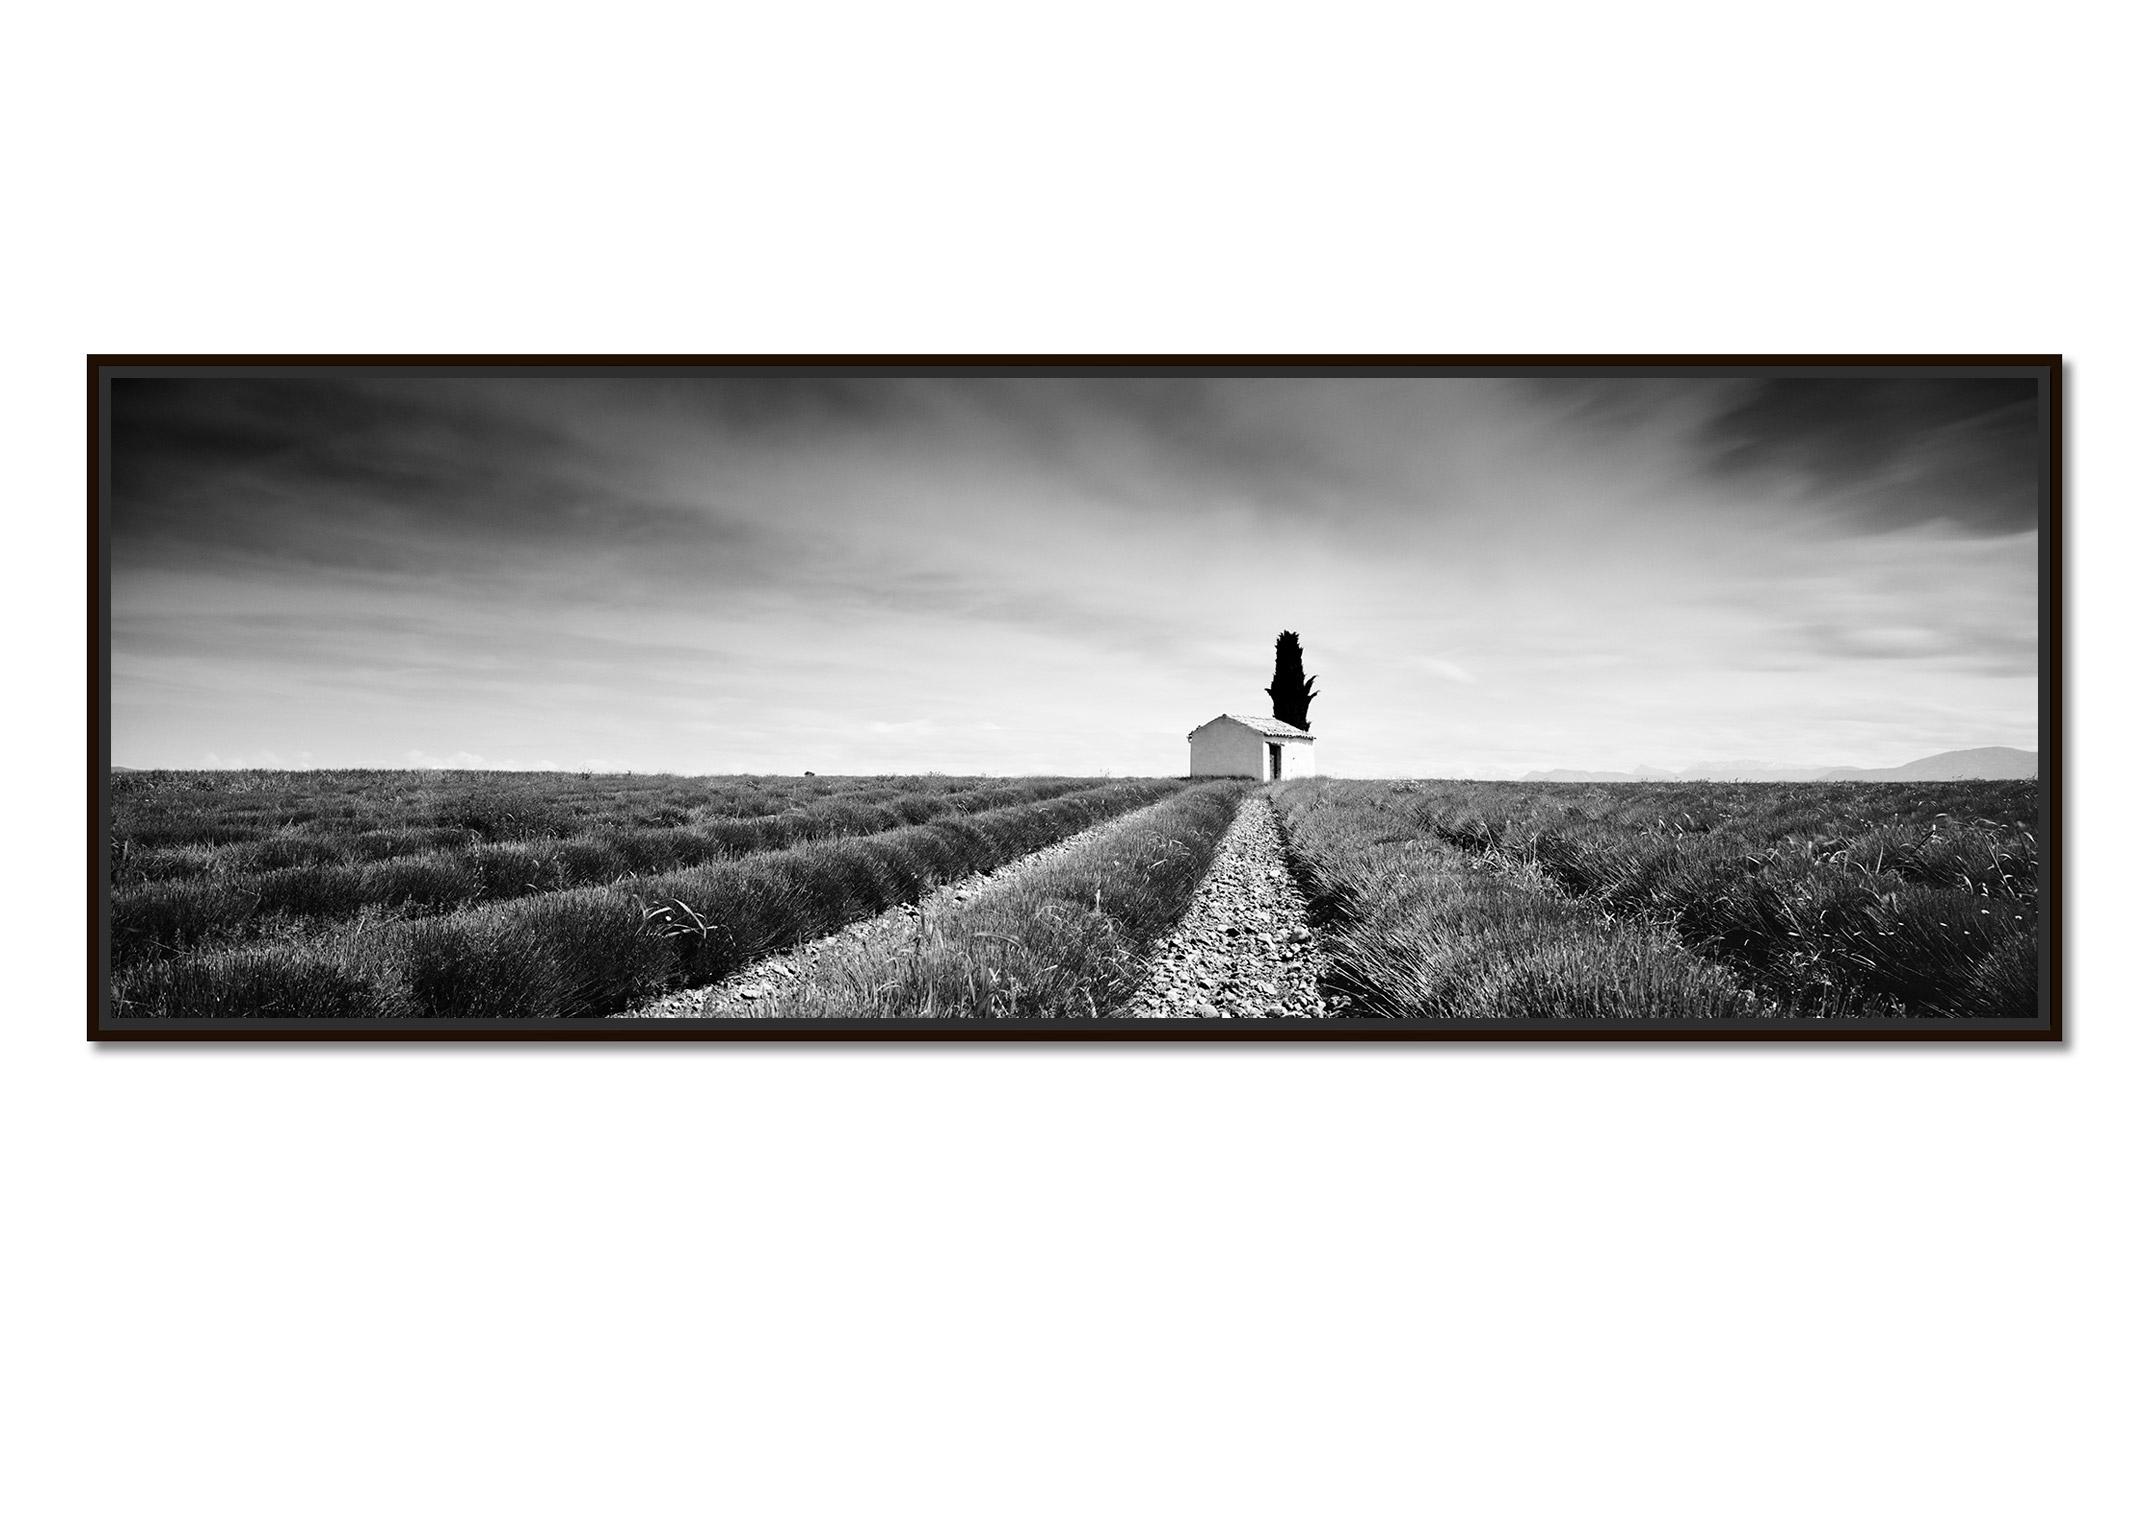 Panorama du champ de lavande, France, photographie de paysage en noir et blanc - Photograph de Gerald Berghammer